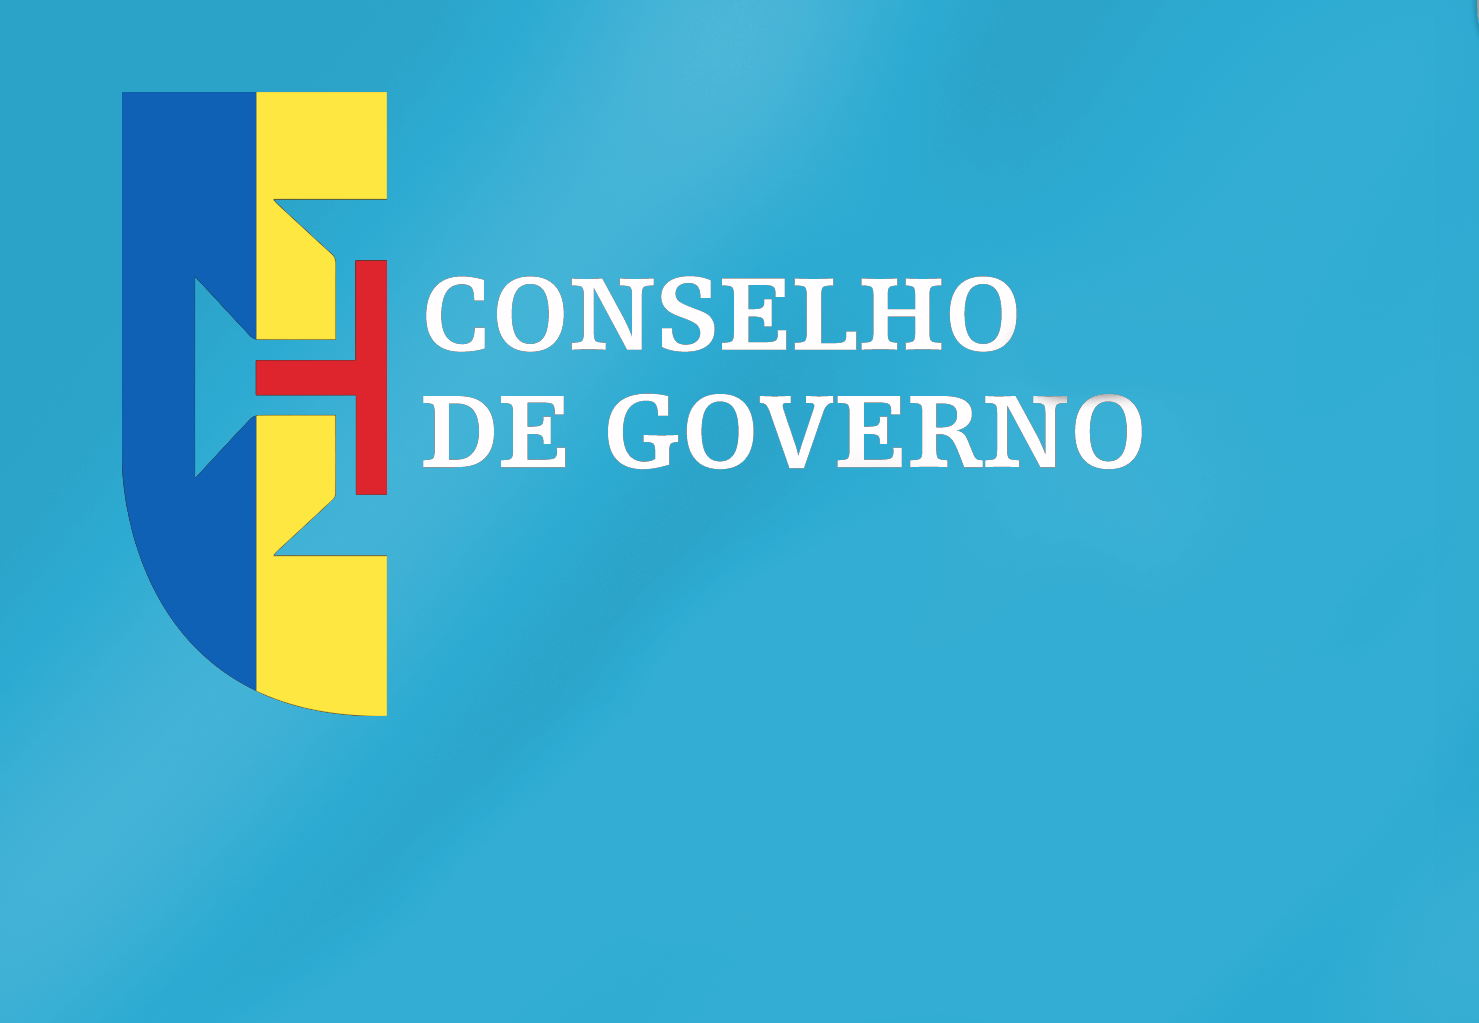 Conclusões Conselho de Governo - 13 de outubro de 2022